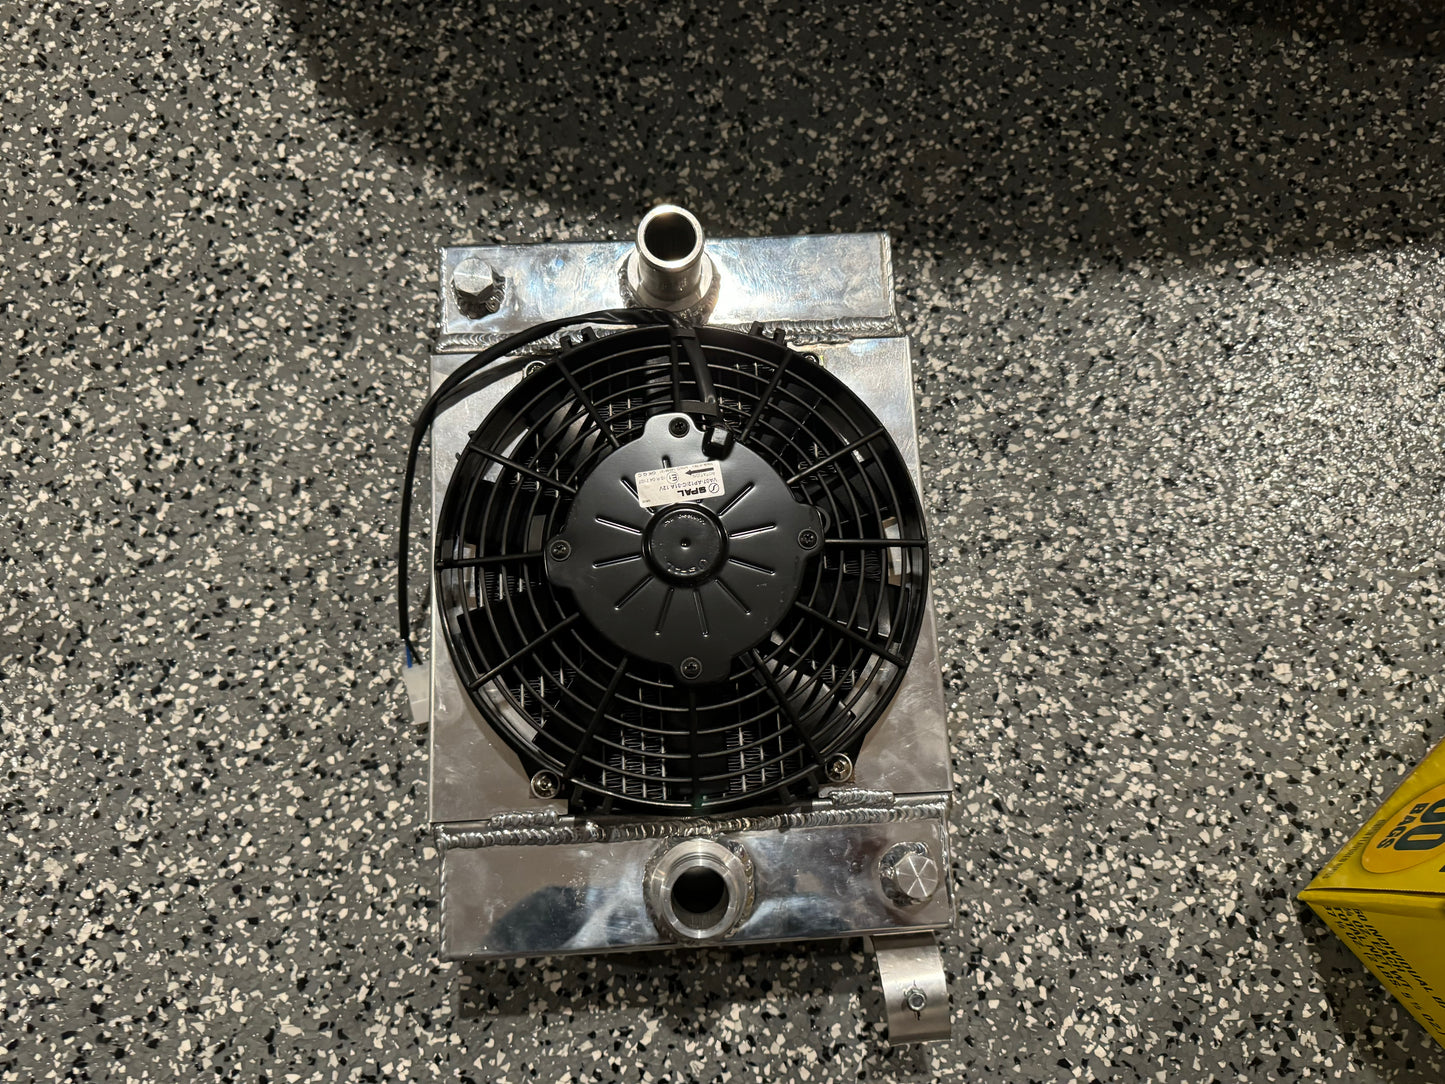 Plm race radiator with spal fan